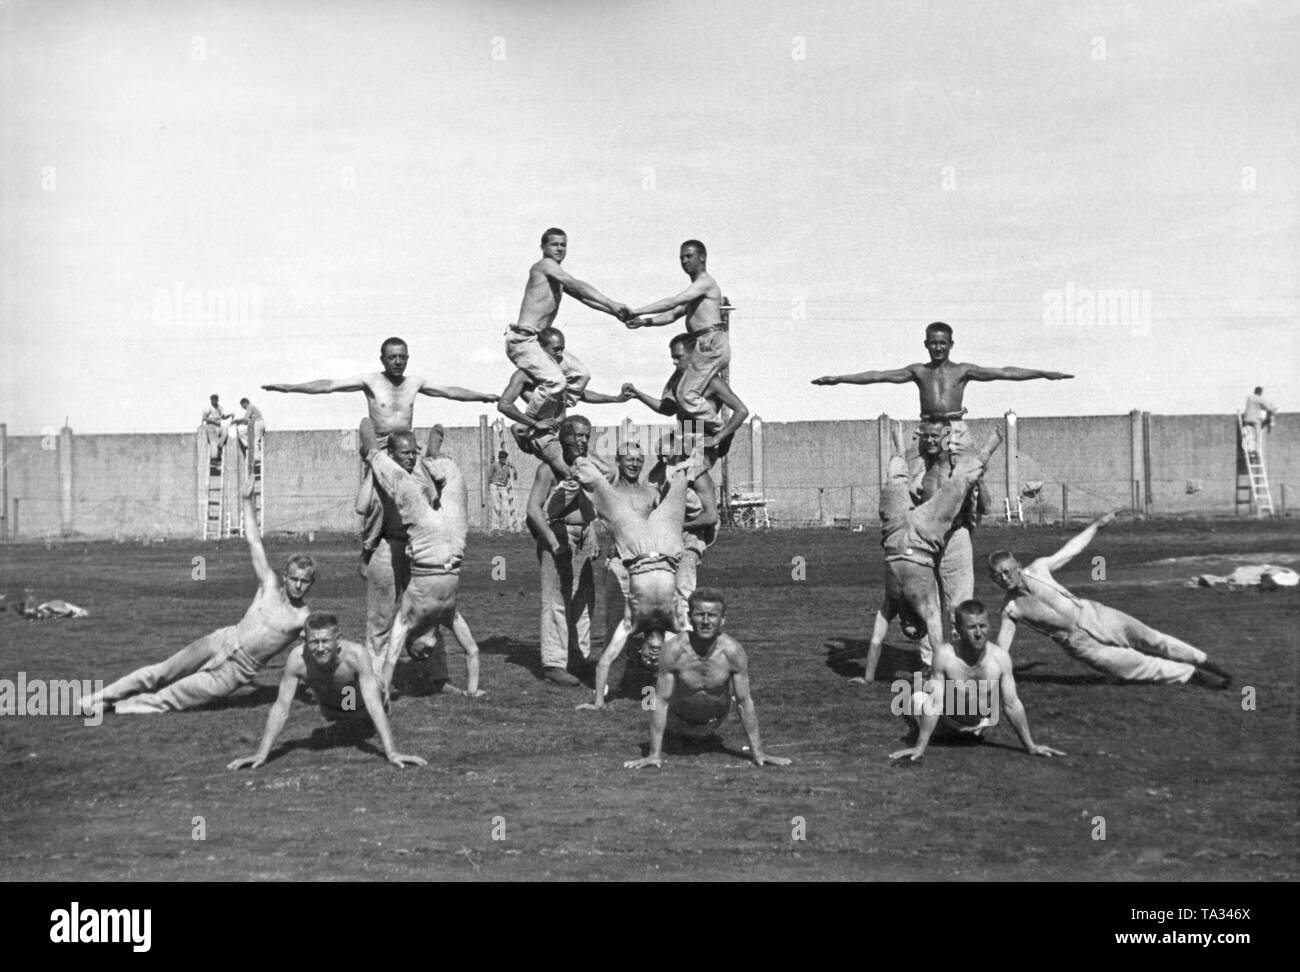 Häftlinge Gymnastik im Konzentrationslager. Im Hintergrund der KZ-Mauer. Dieses Bild, wie viele andere, war für die NS-Propaganda gemacht. Stockfoto